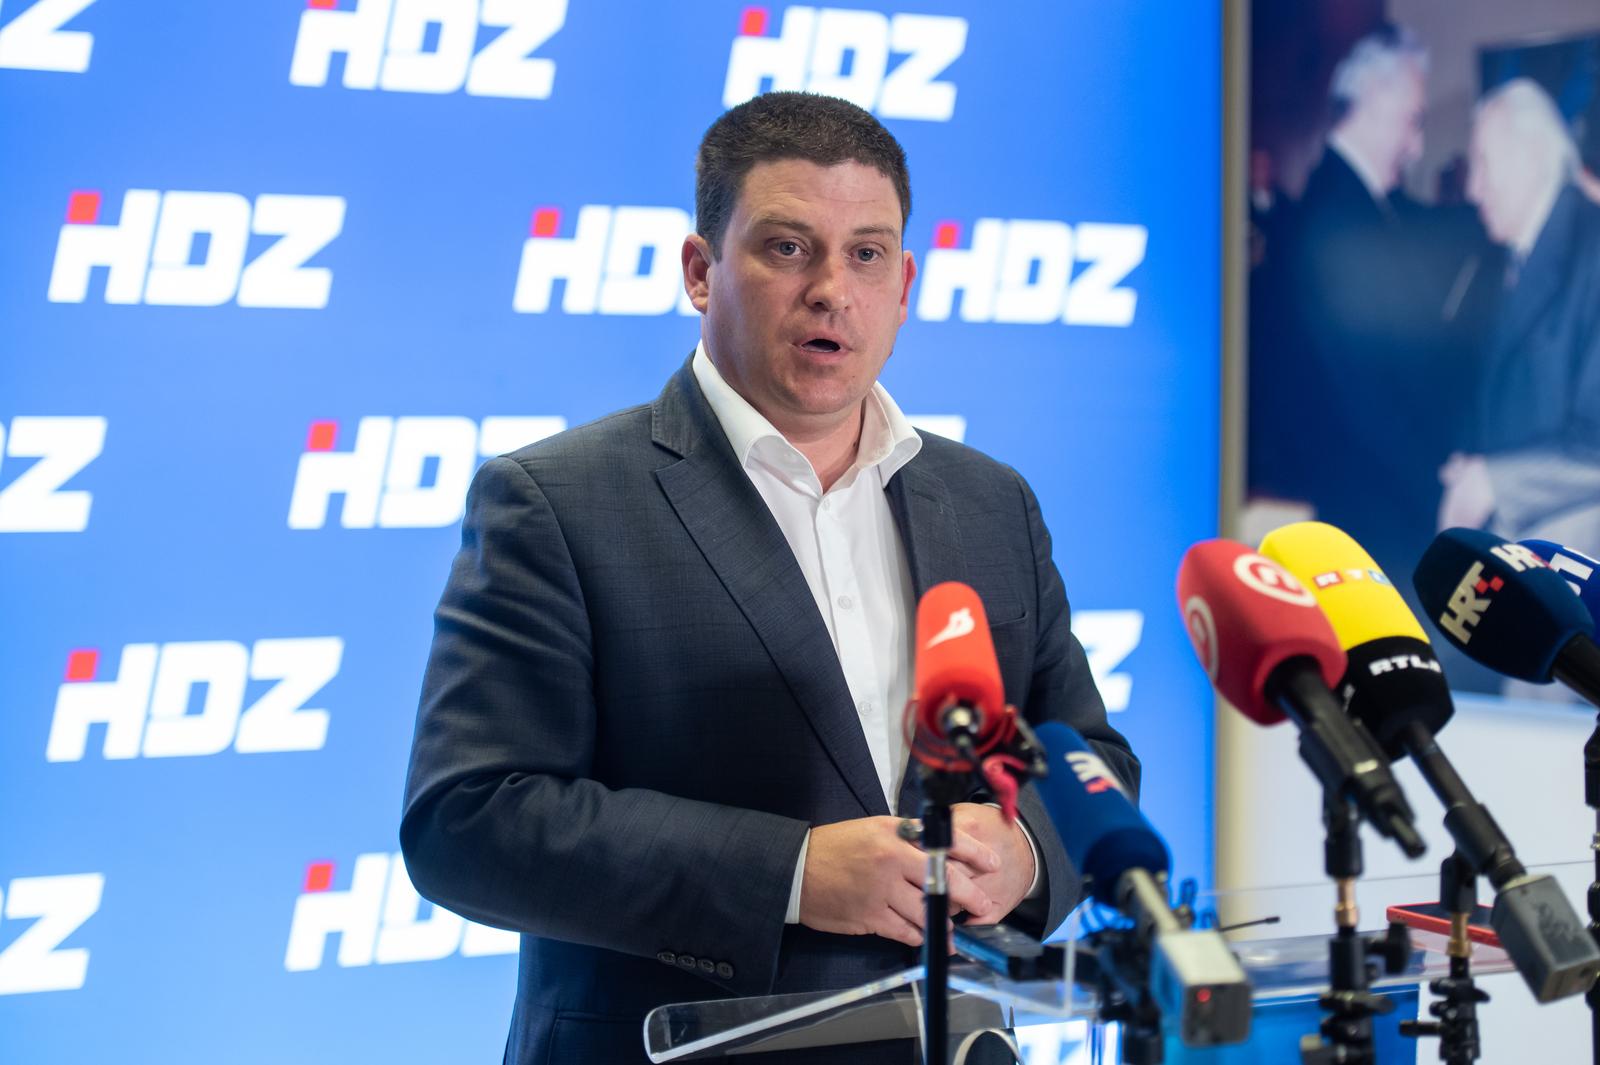 29.5.2023., Zagreb - Oleg Butkovic dao je izjavu za medije nakon sjednice sireg Predsjednistva HDZ-a. Photo: Neva Zganec/PIXSELL